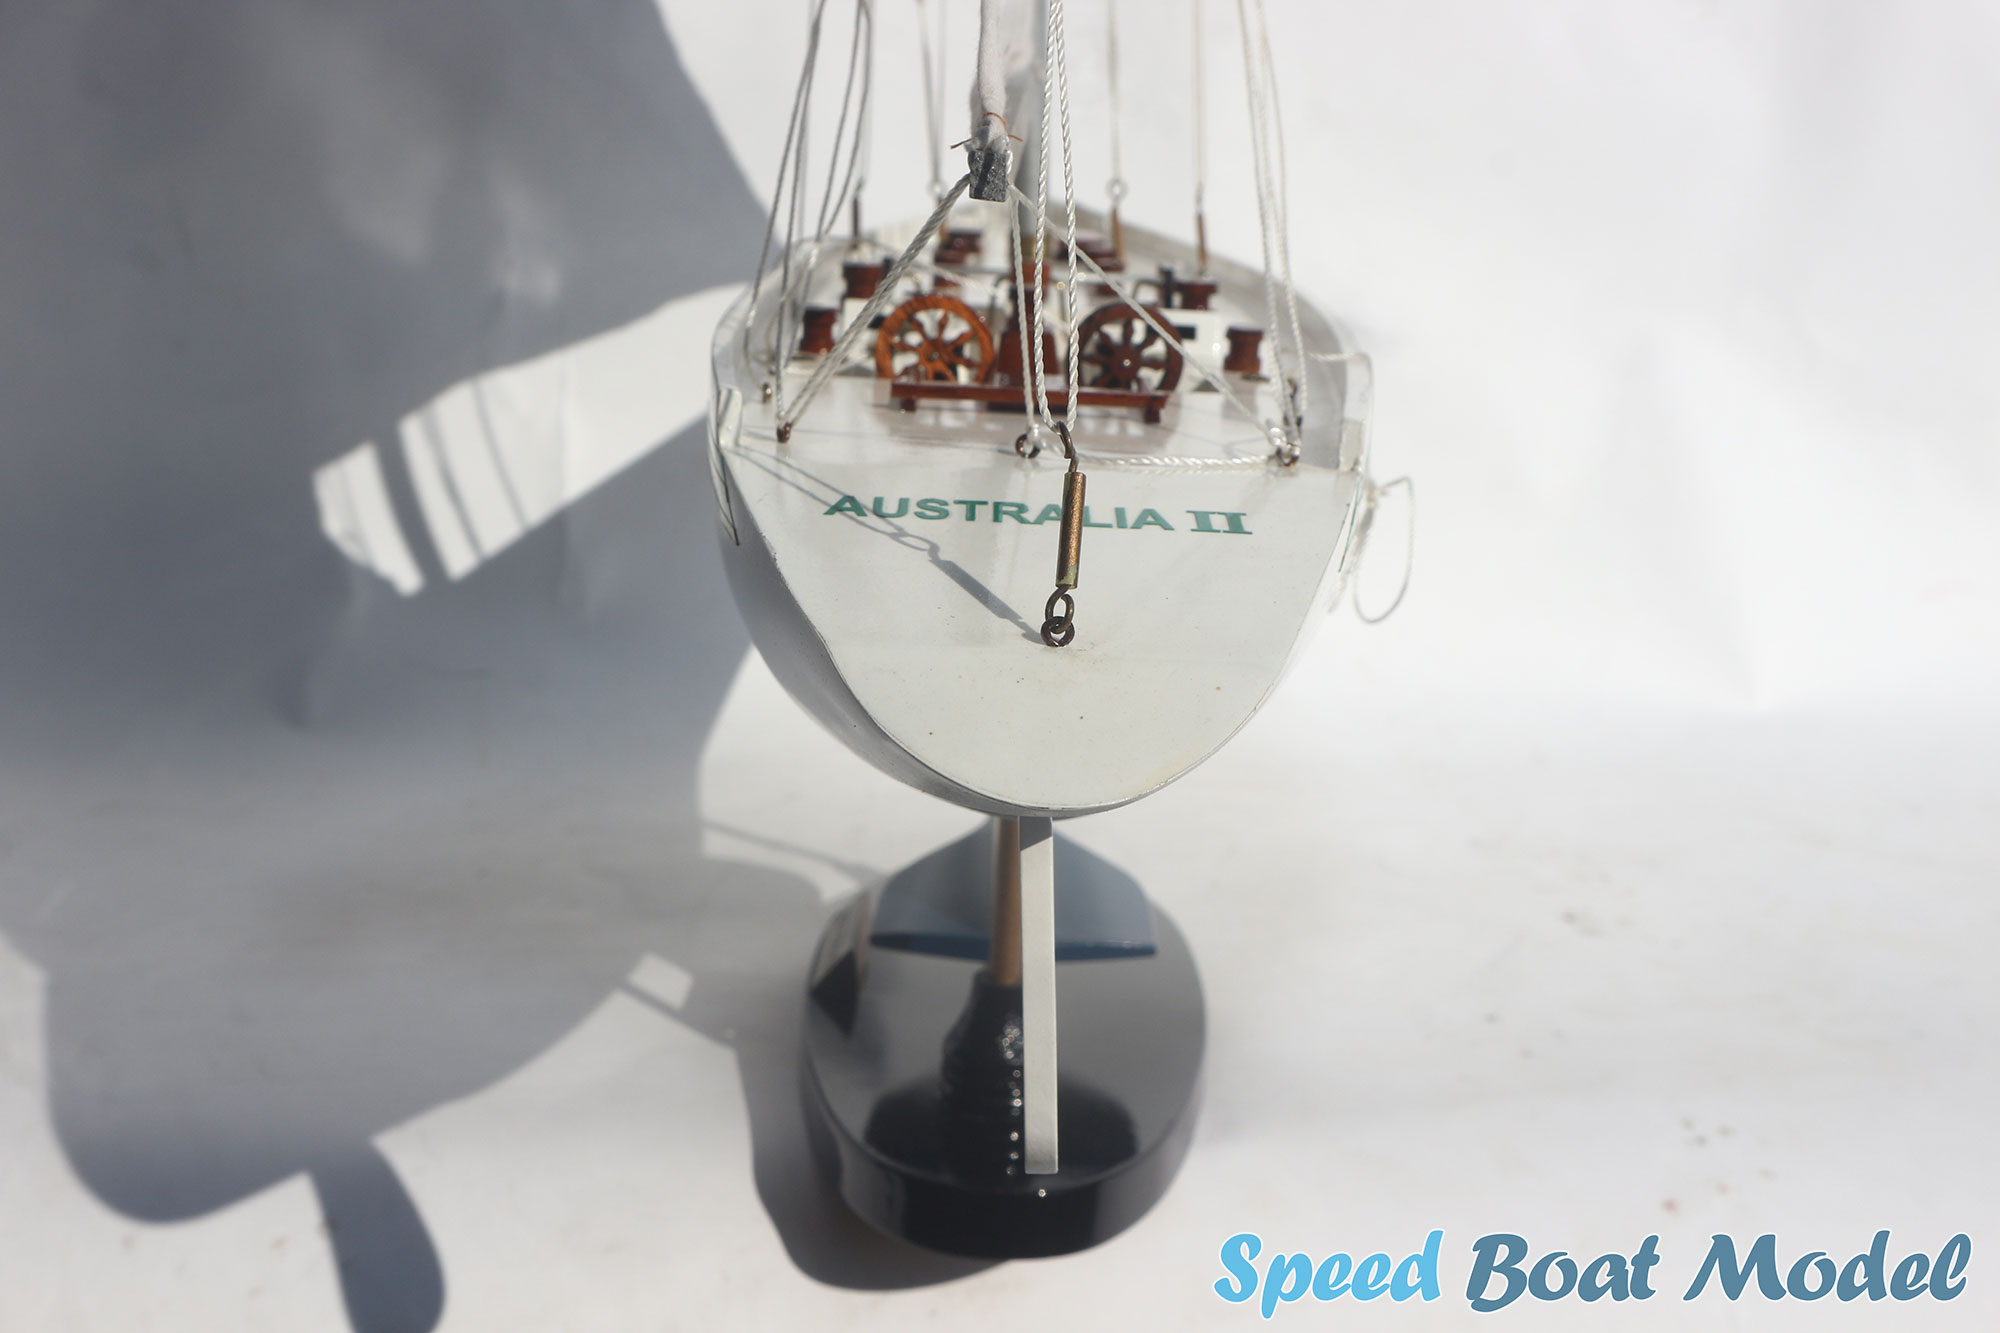 Australia II Sailing Boat Model 25.6"